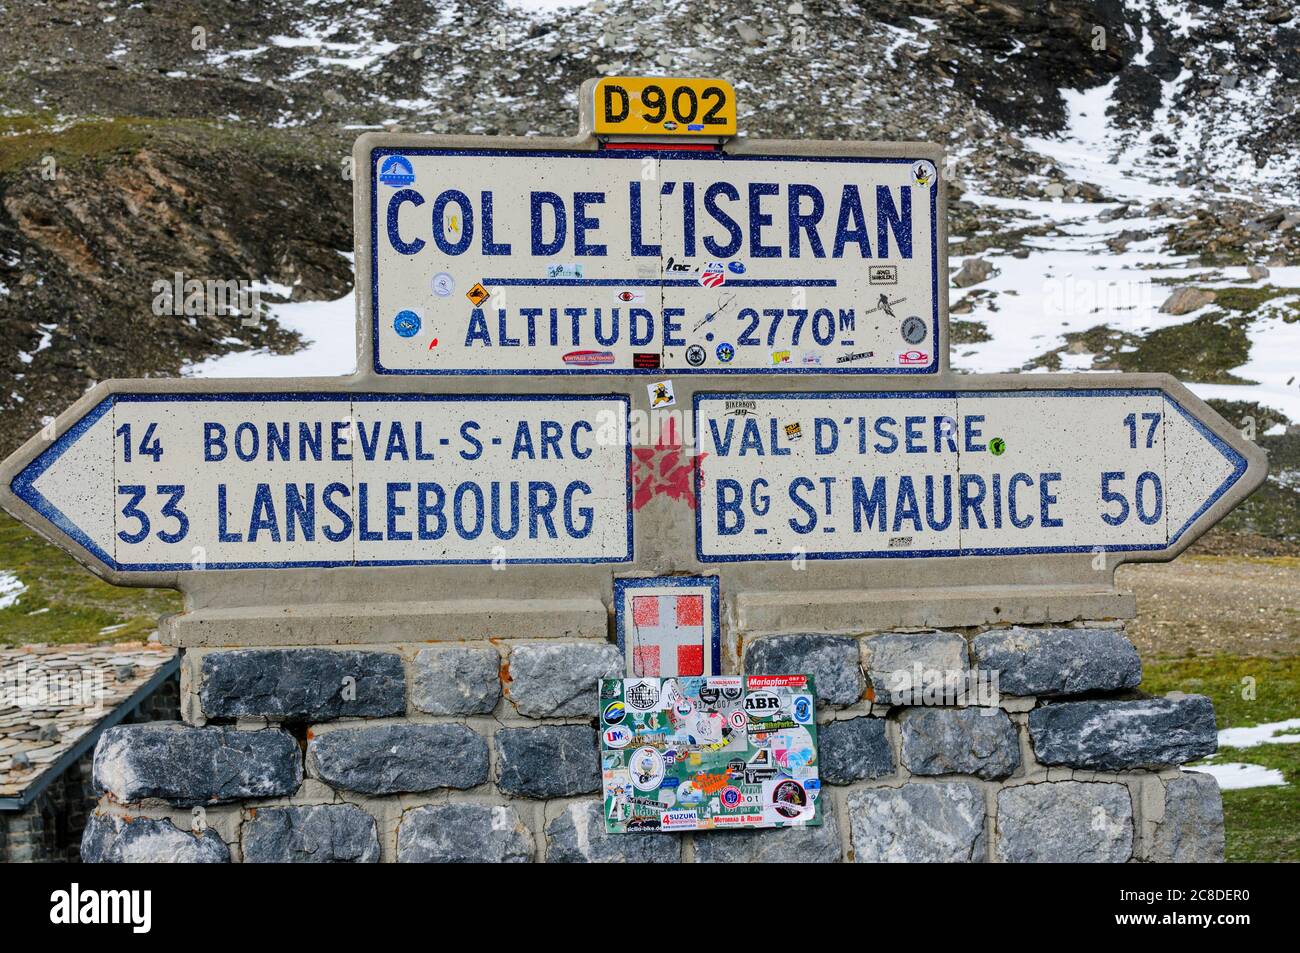 Wegweiser auf der Spitze des col de l'Iseran in den französischen Alpen. Der Col de l'Iseran ist eine der höchsten Bergstraßen Europas, Höhe 2770 m. Stockfoto